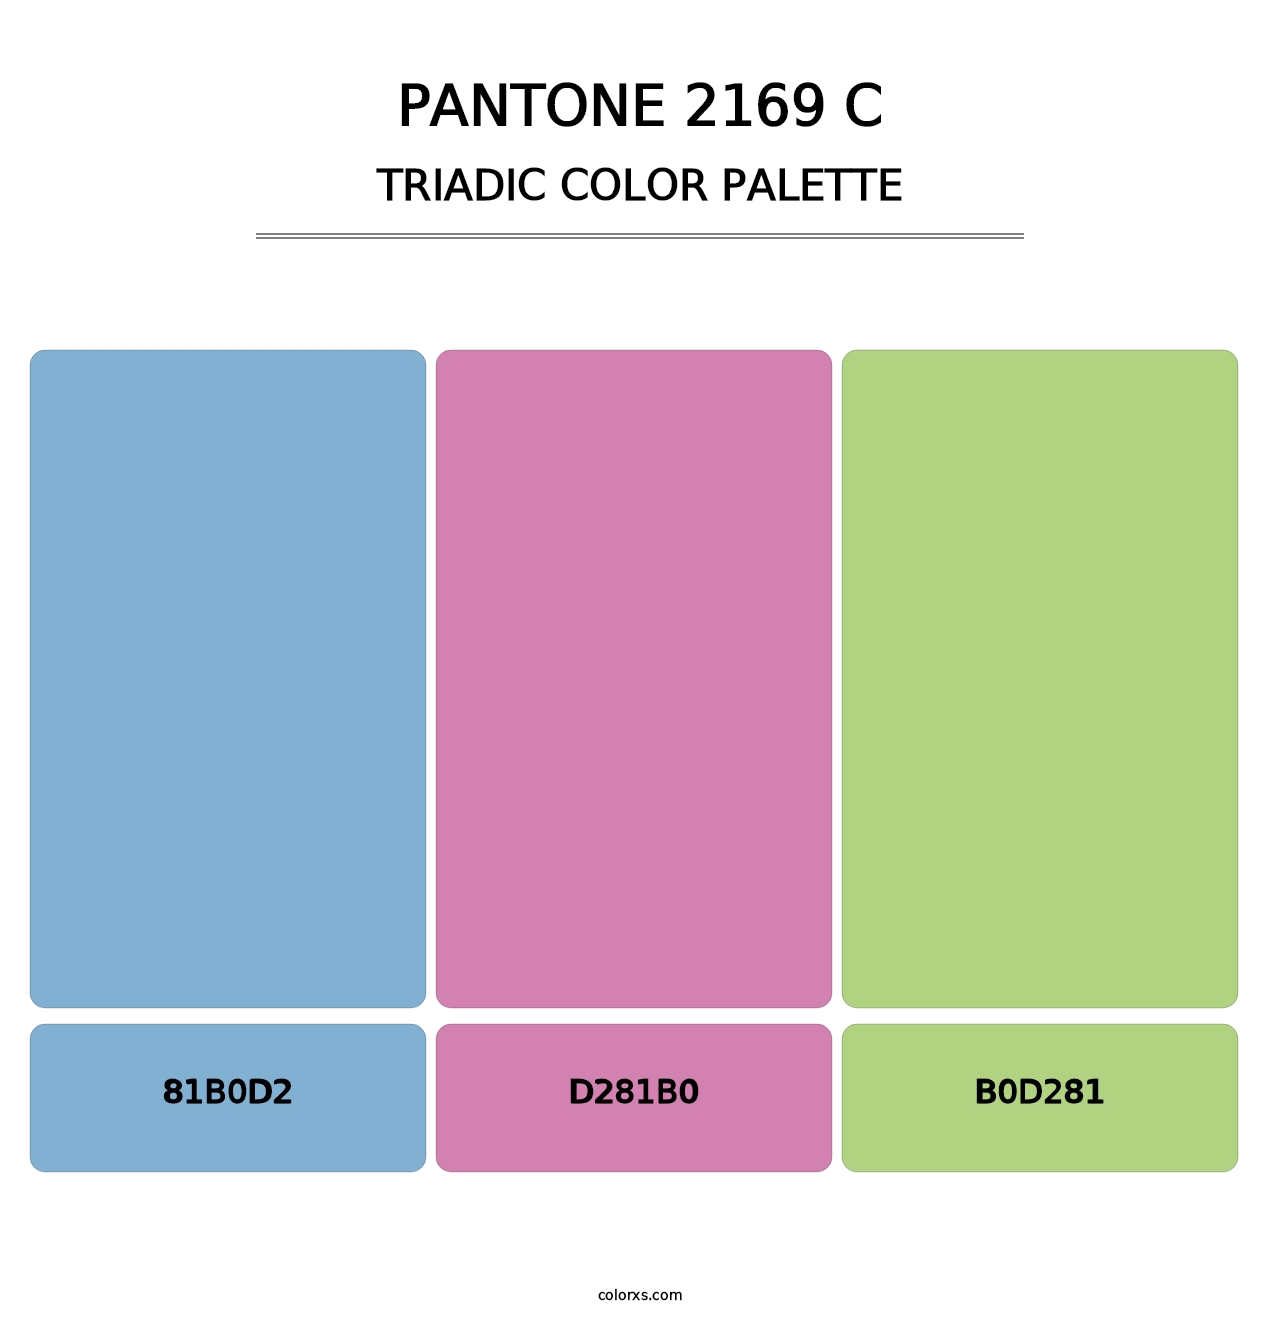 PANTONE 2169 C - Triadic Color Palette